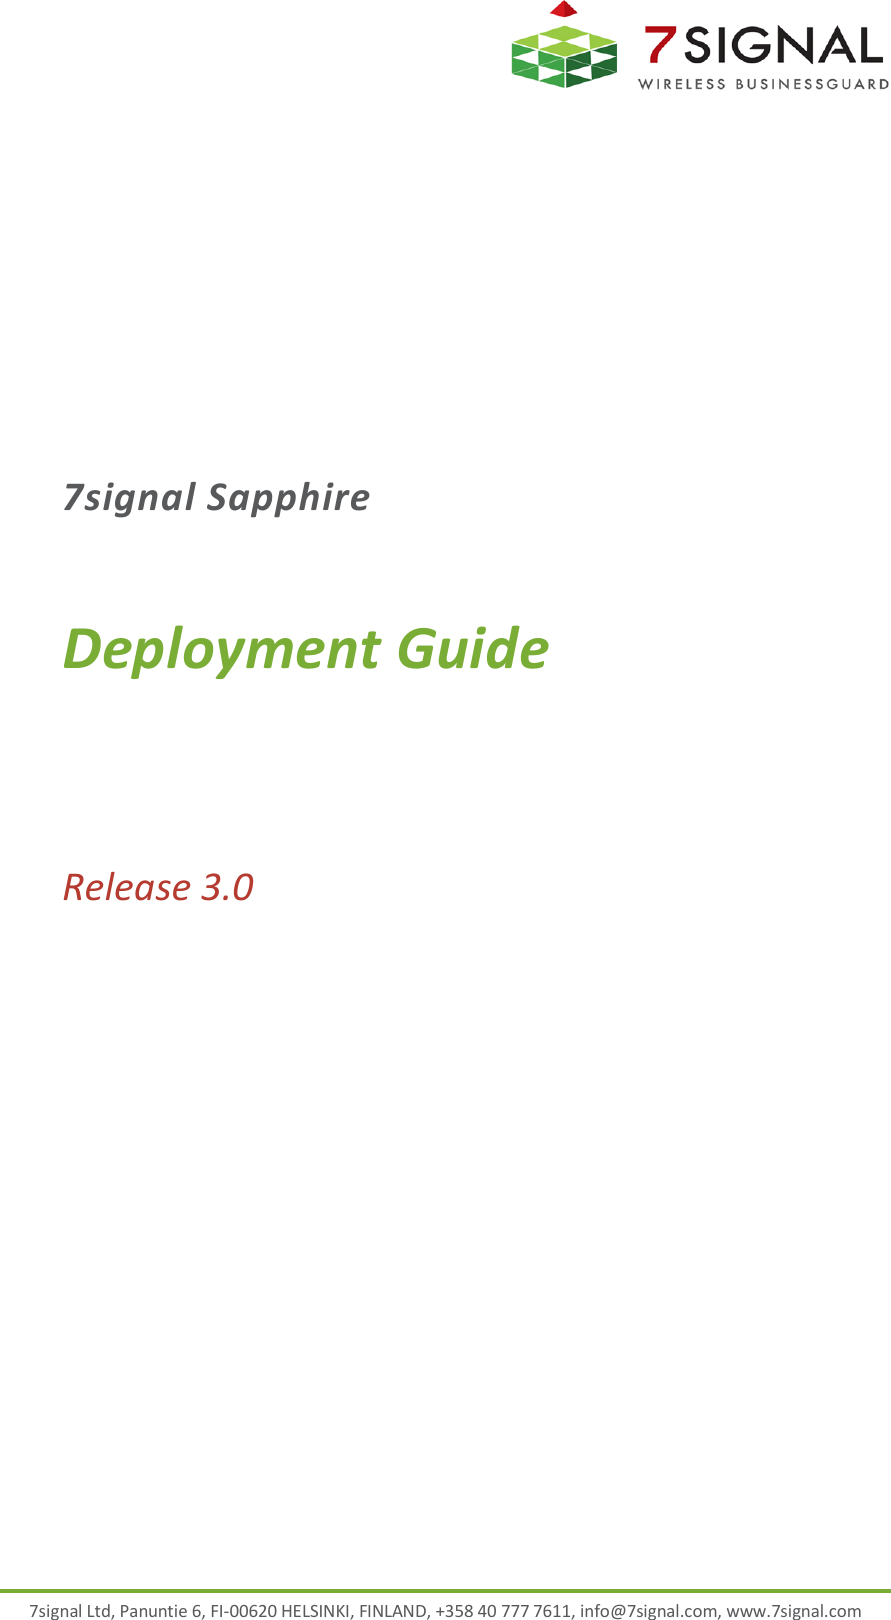  7signal Ltd, Panuntie 6, FI-00620 HELSINKI, FINLAND, +358 40 777 7611, info@7signal.com, www.7signal.com 7signal Sapphire Deployment Guide Release 3.0  